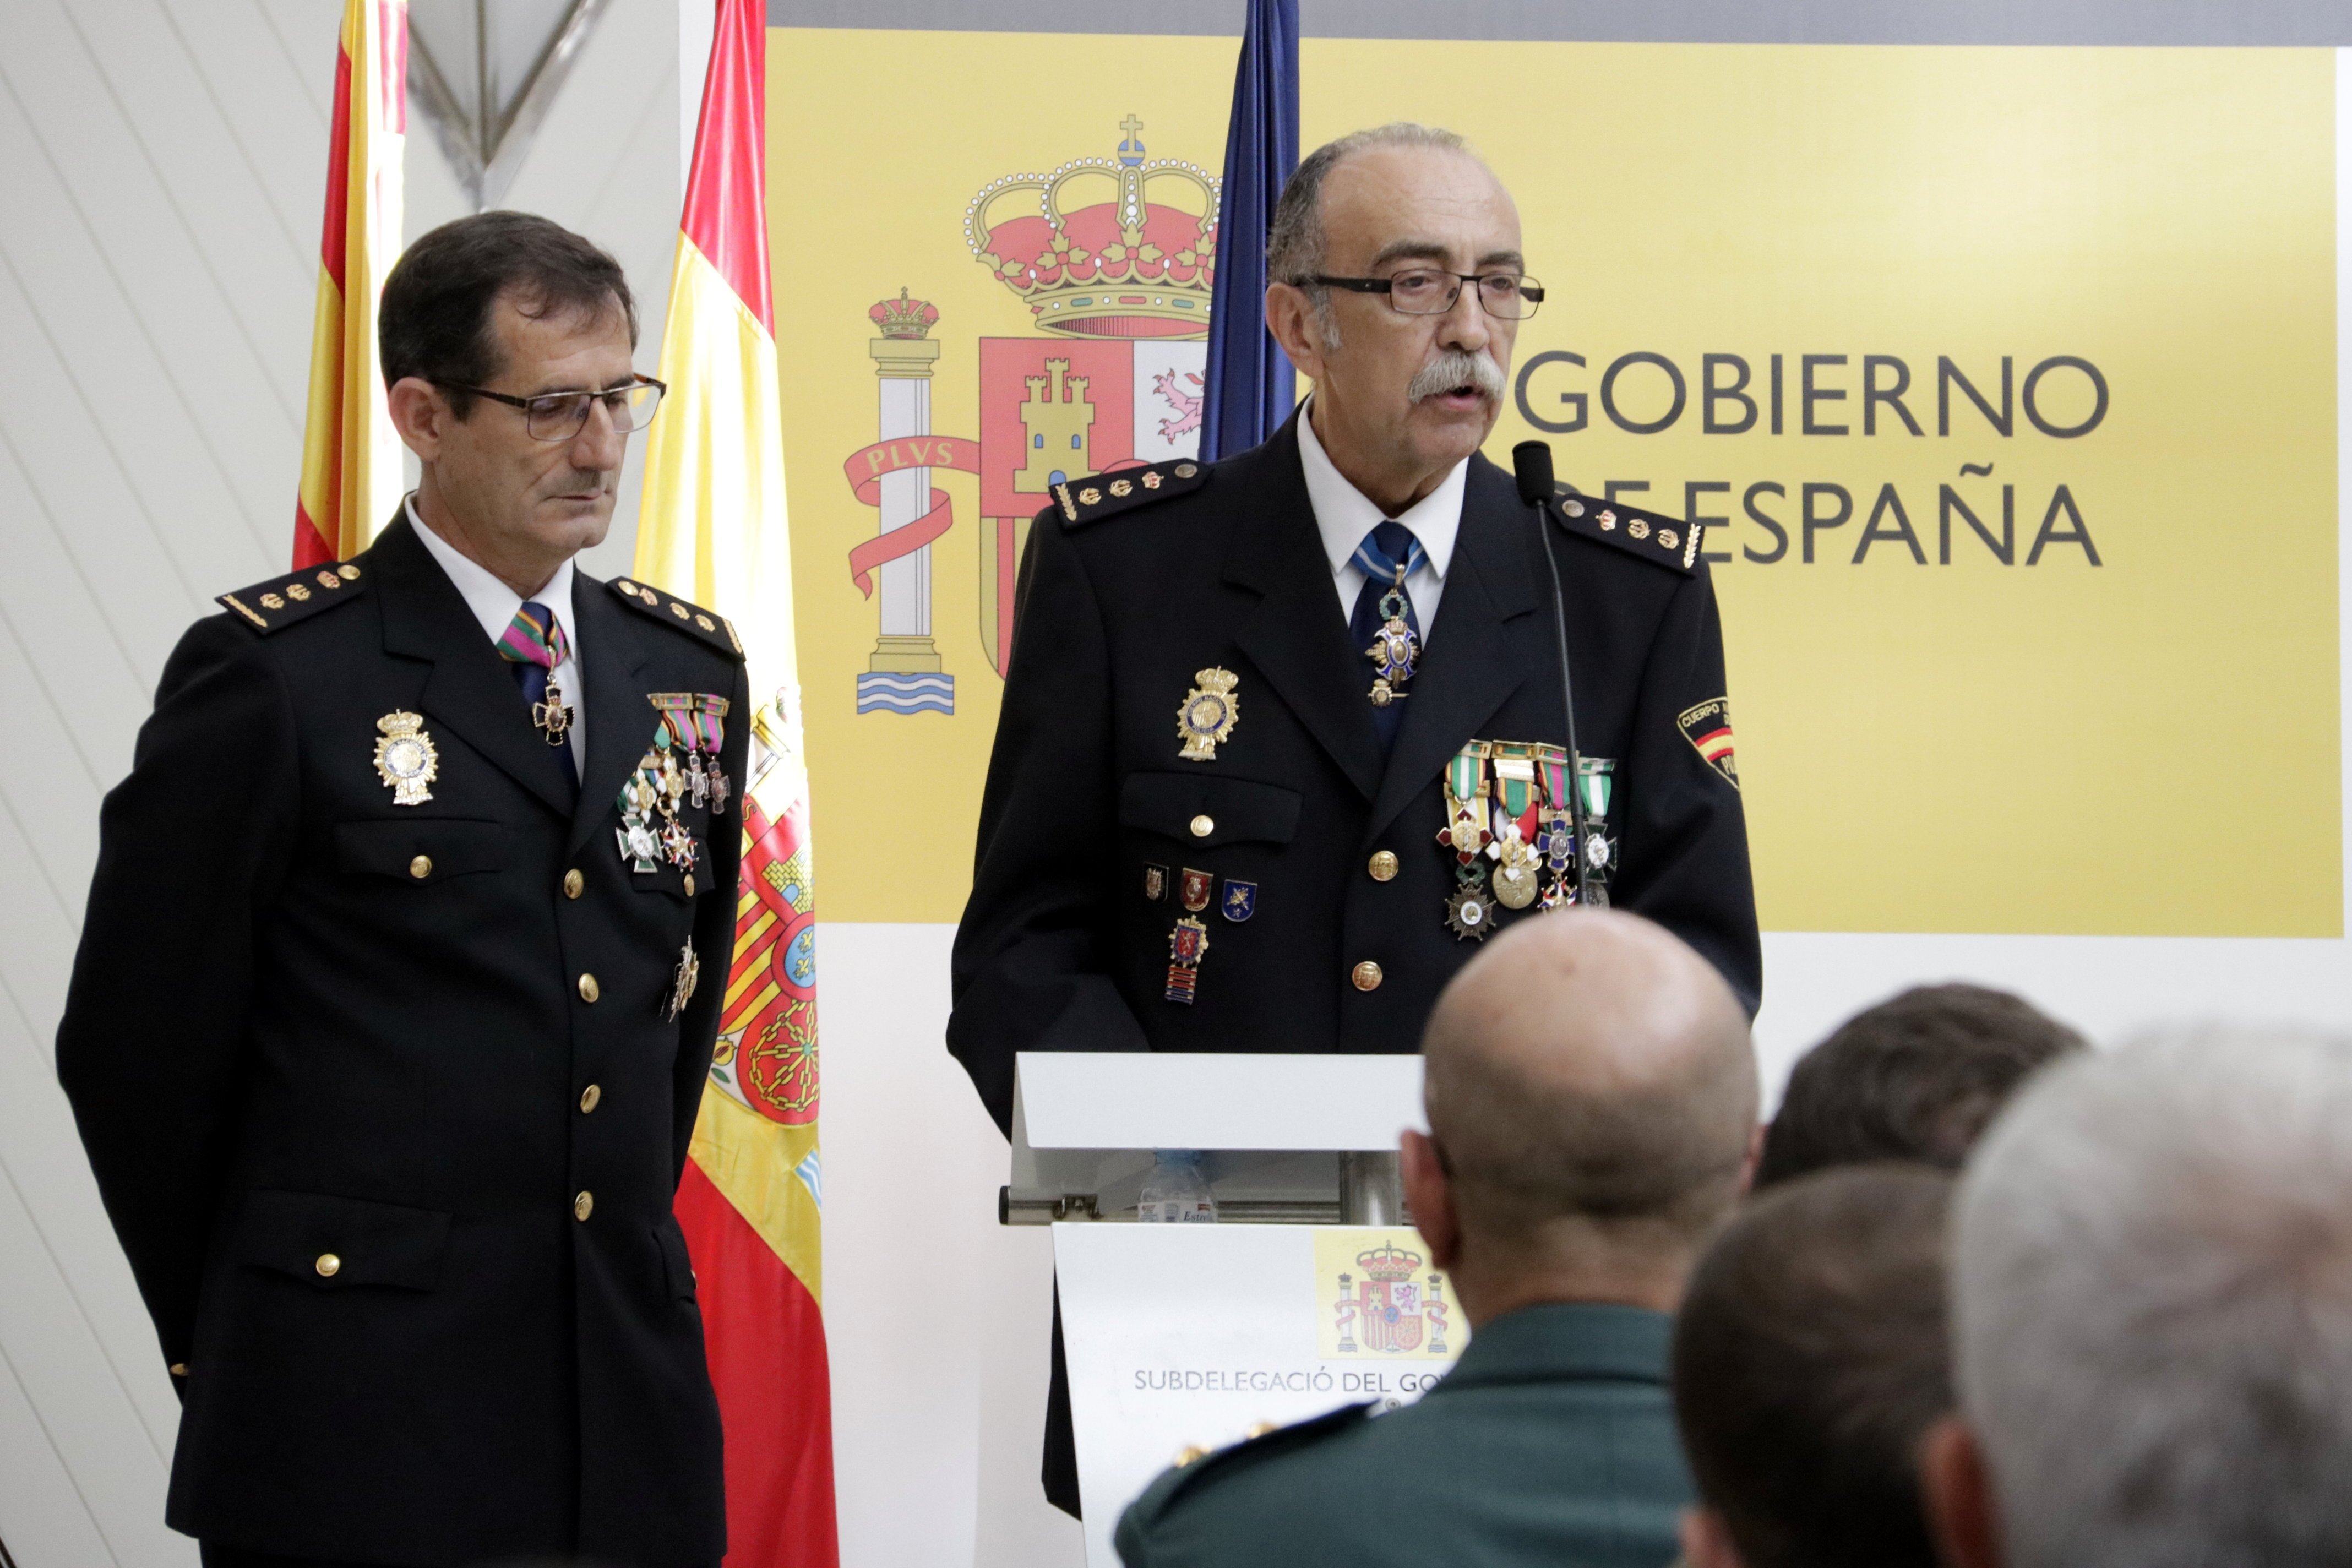 El cap de la policia espanyola a Girona assegura que seran "sempre aquí"